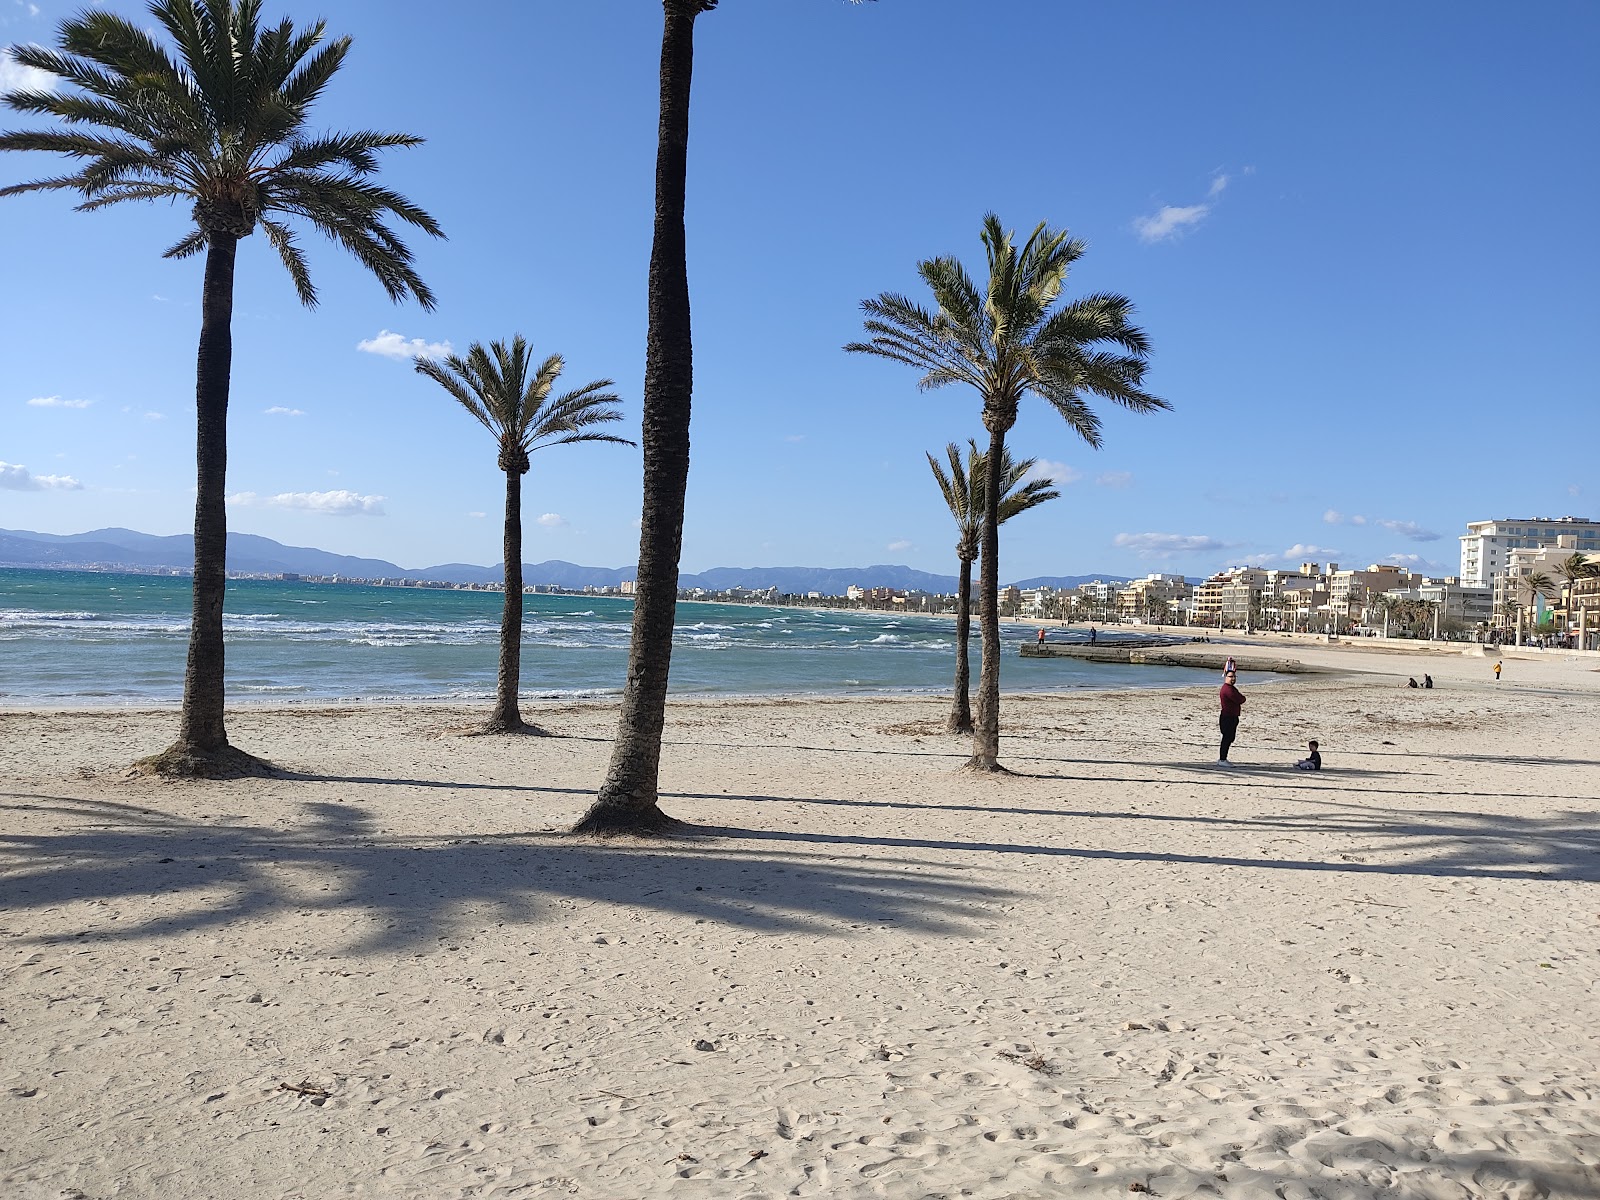 Valokuva Platja de s'Arenal (Palma)ista. pinnalla turkoosi puhdas vesi:n kanssa